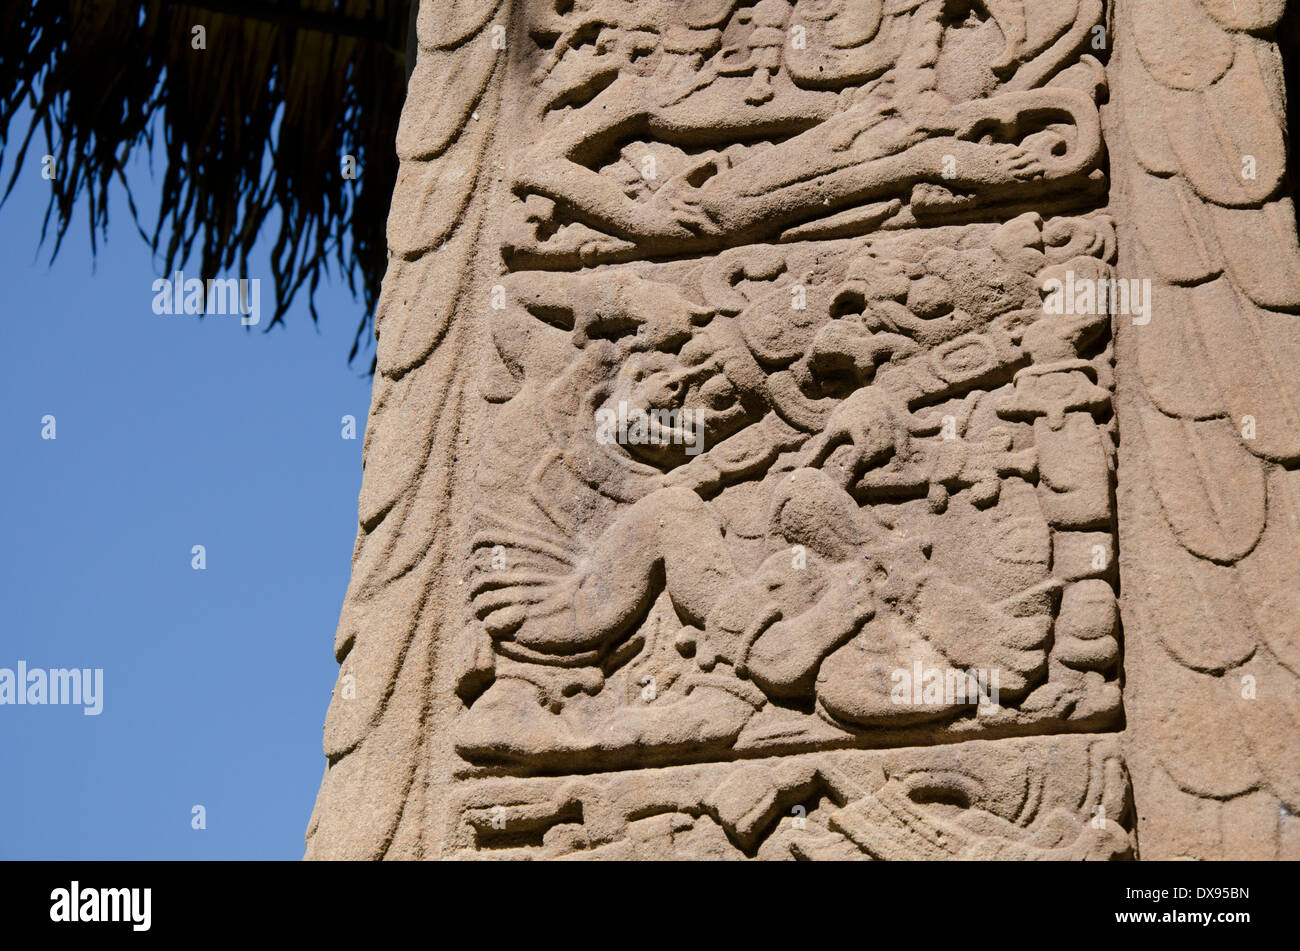 Guatemala, Dipartimento di Izabal, Quirigua Parco Nazionale. Maya sito archeologico, periodo classico (ANNUNCIO 200-900). Stele dettaglio. Foto Stock